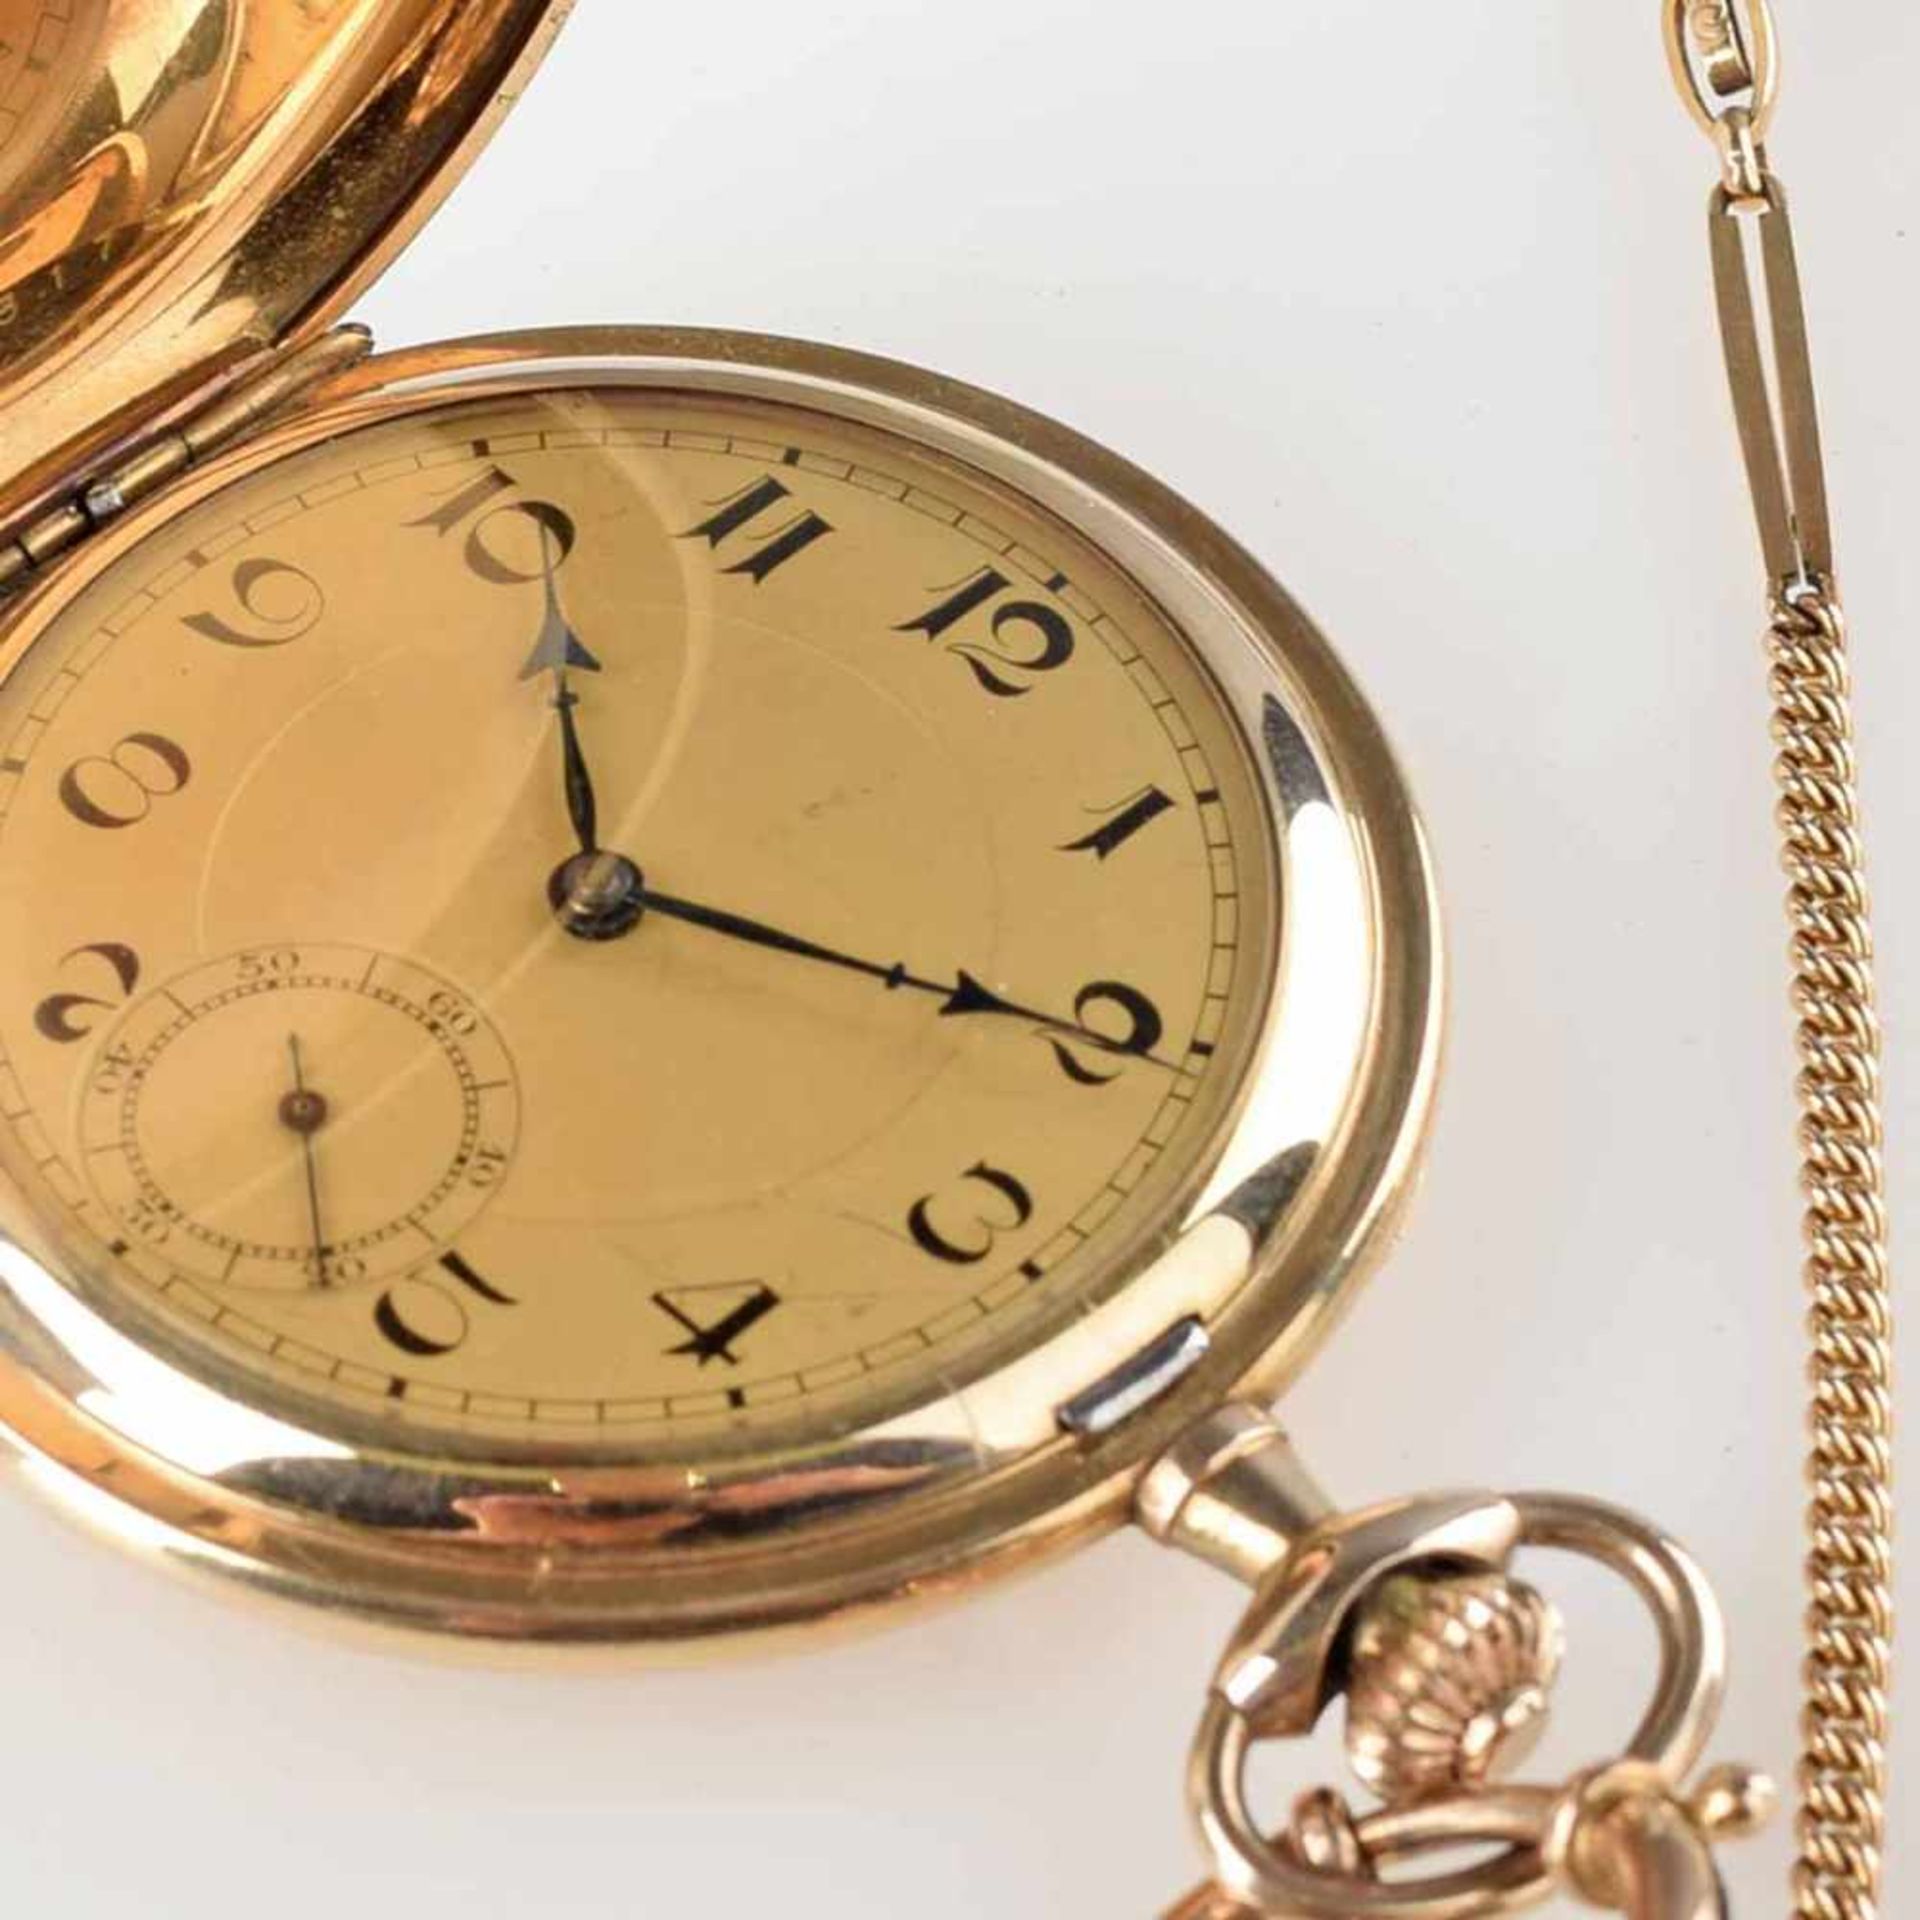 Sprungdeckeltaschenuhr vergoldet, mit goldfarbenem Zifferblatt, gebläute Stahlzeiger, Stunde, Minute